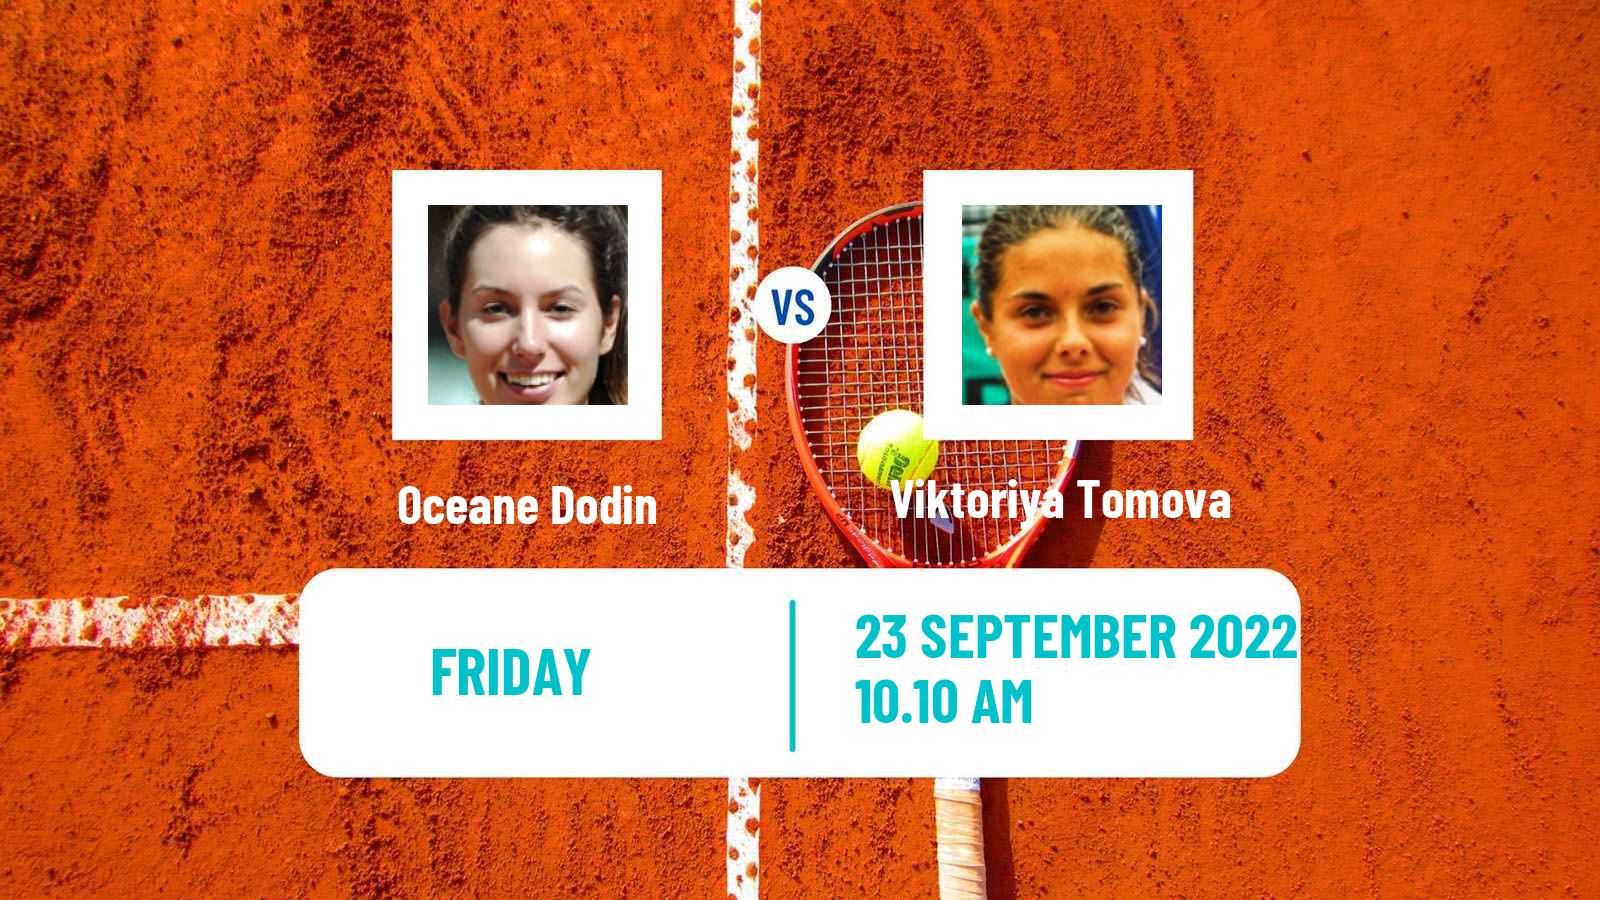 Tennis ATP Challenger Oceane Dodin - Viktoriya Tomova